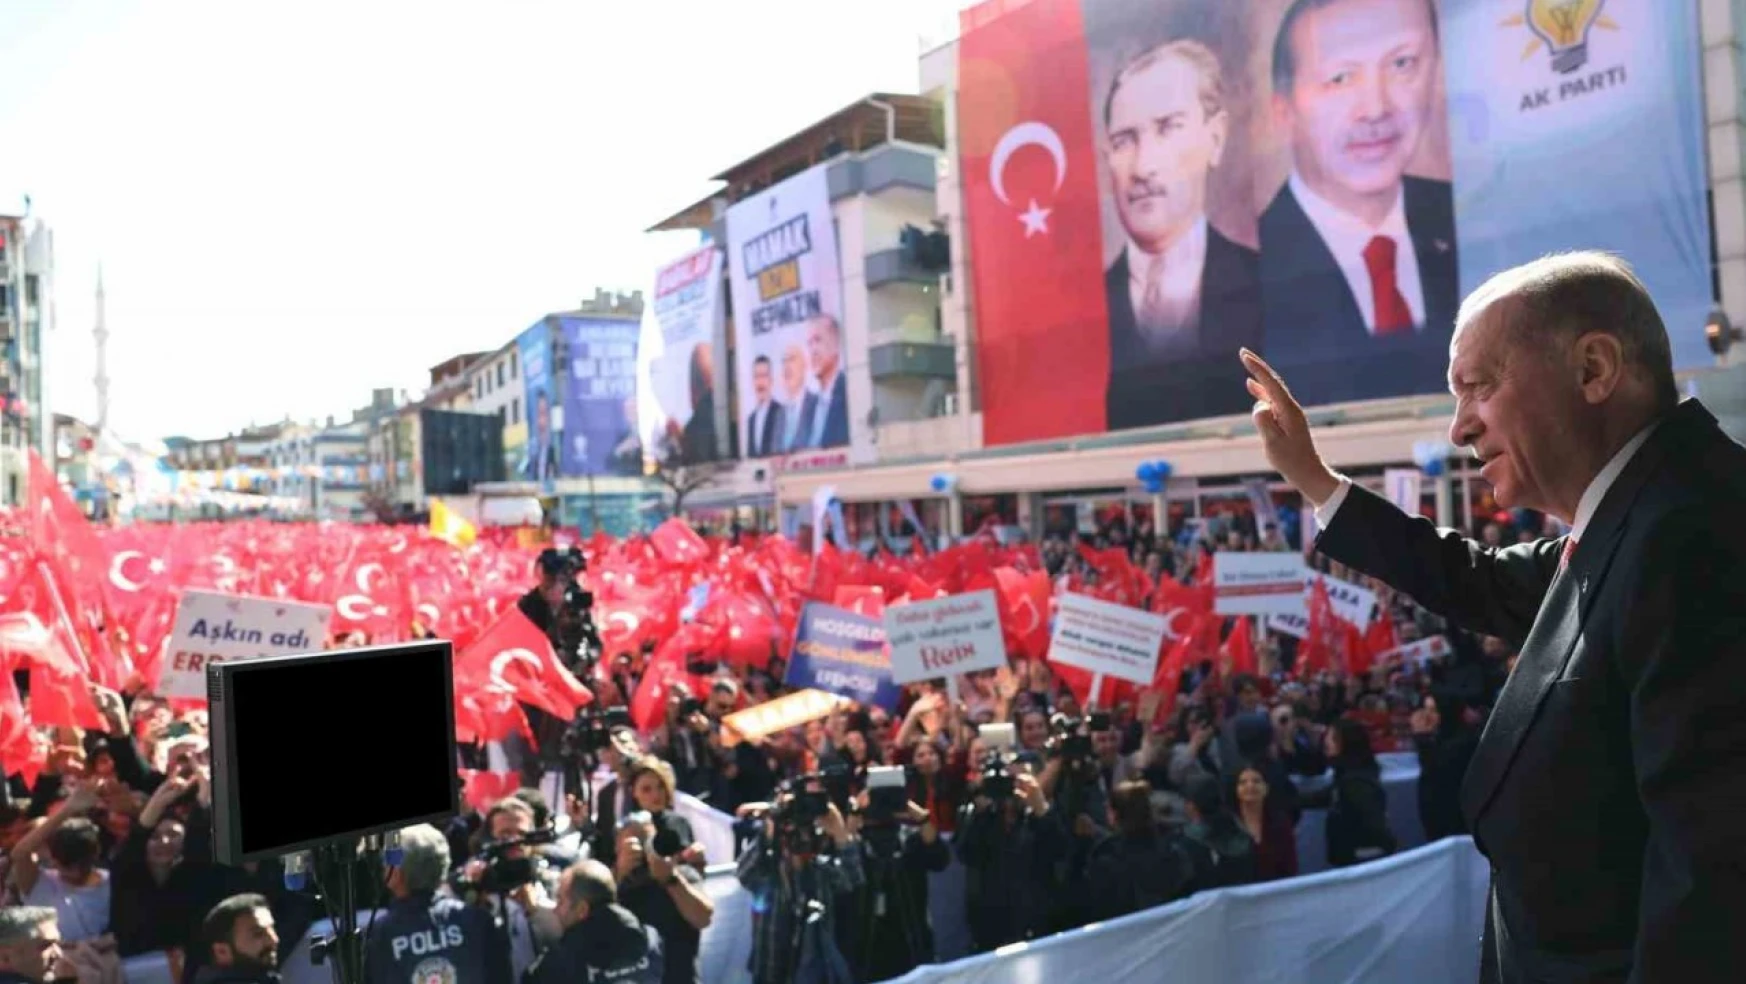 Cumhurbaşkanı Erdoğan: 'Bizim siyaset geleneğimizde beklentiler karşılanmayınca muhalefetin yaptığı gibi suçu, hatayı, kusuru millete atmak yoktur'